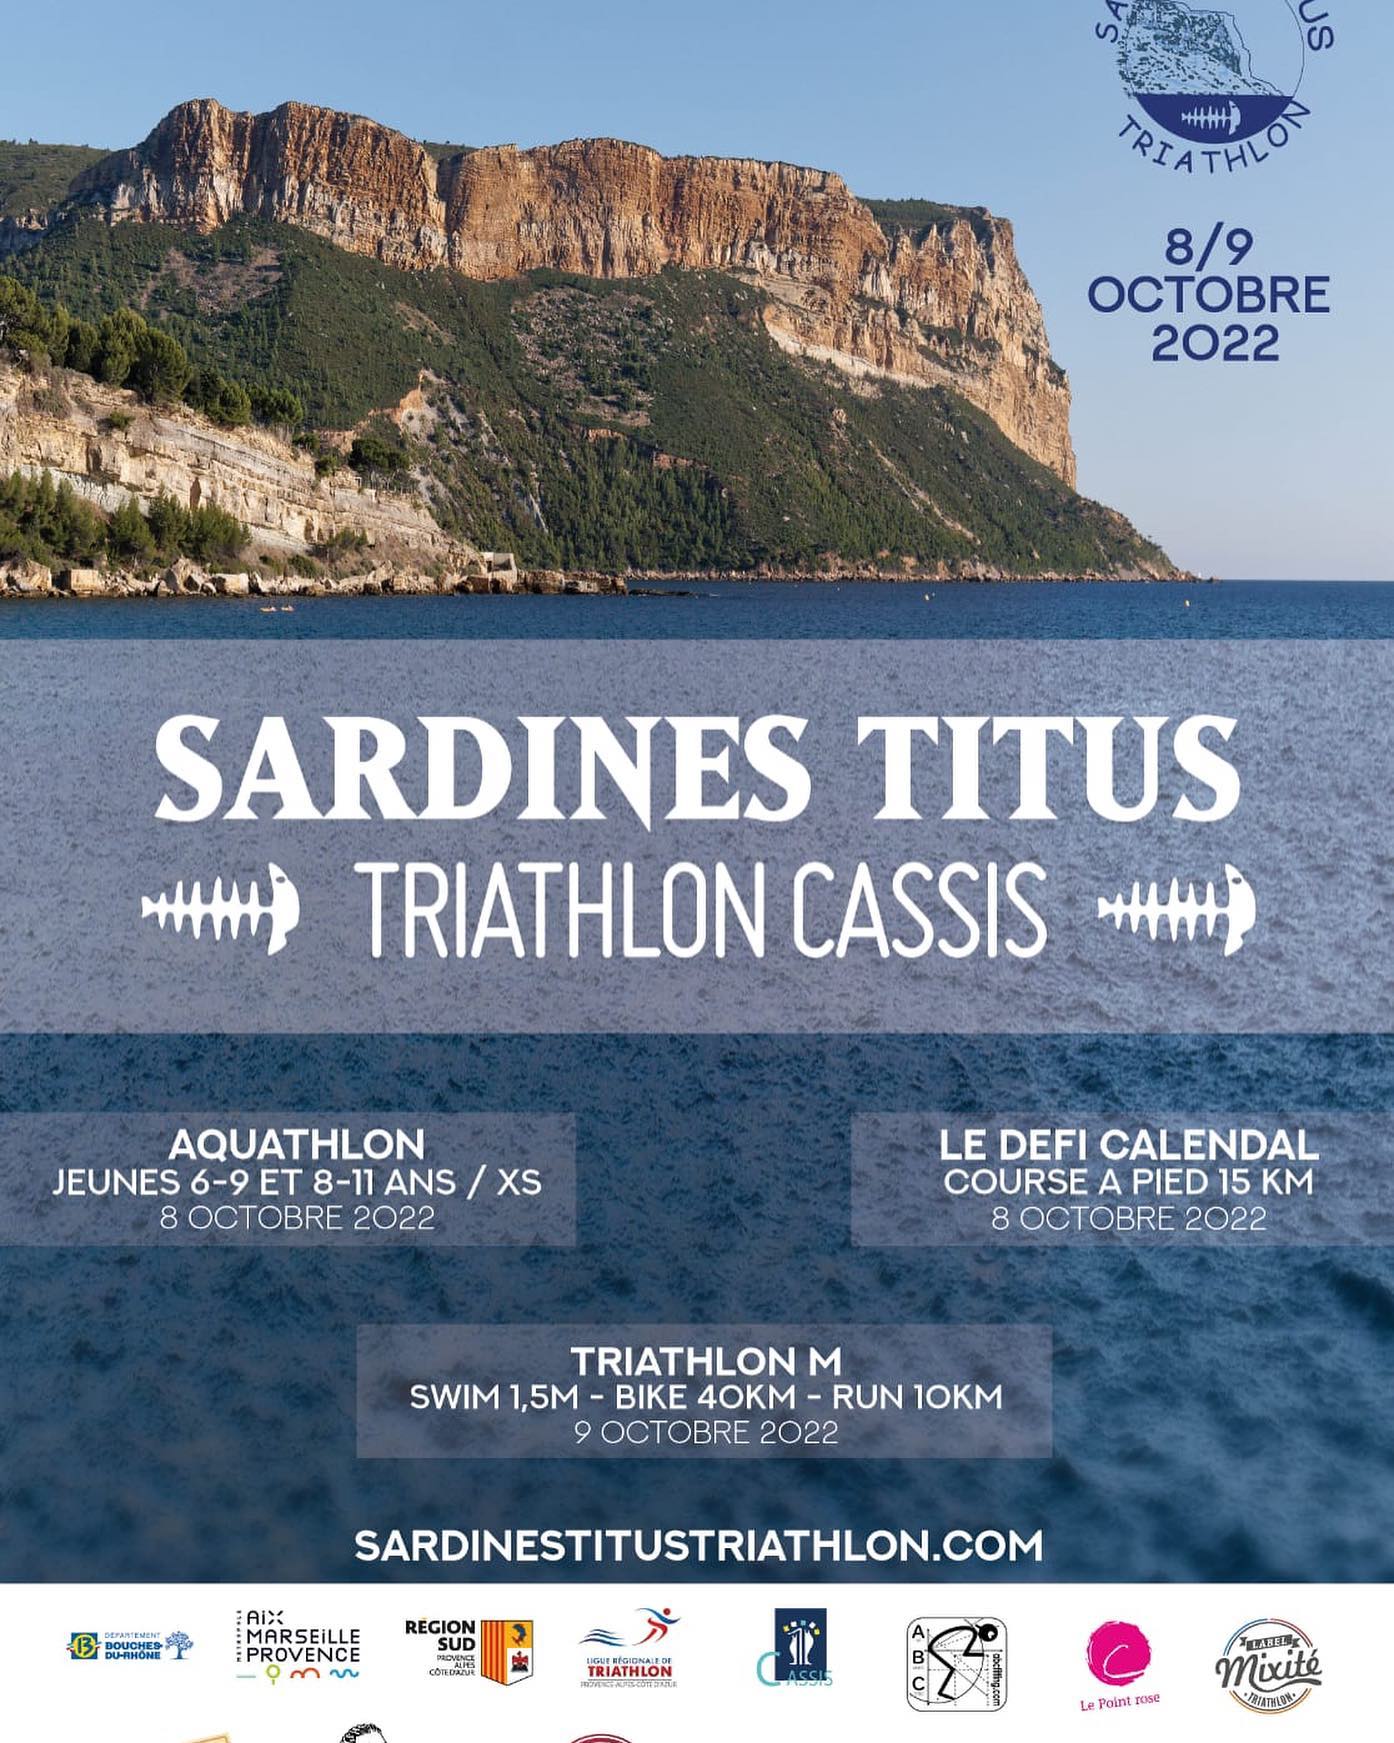 Triathlon M de Cassis / Run for Le Point rose